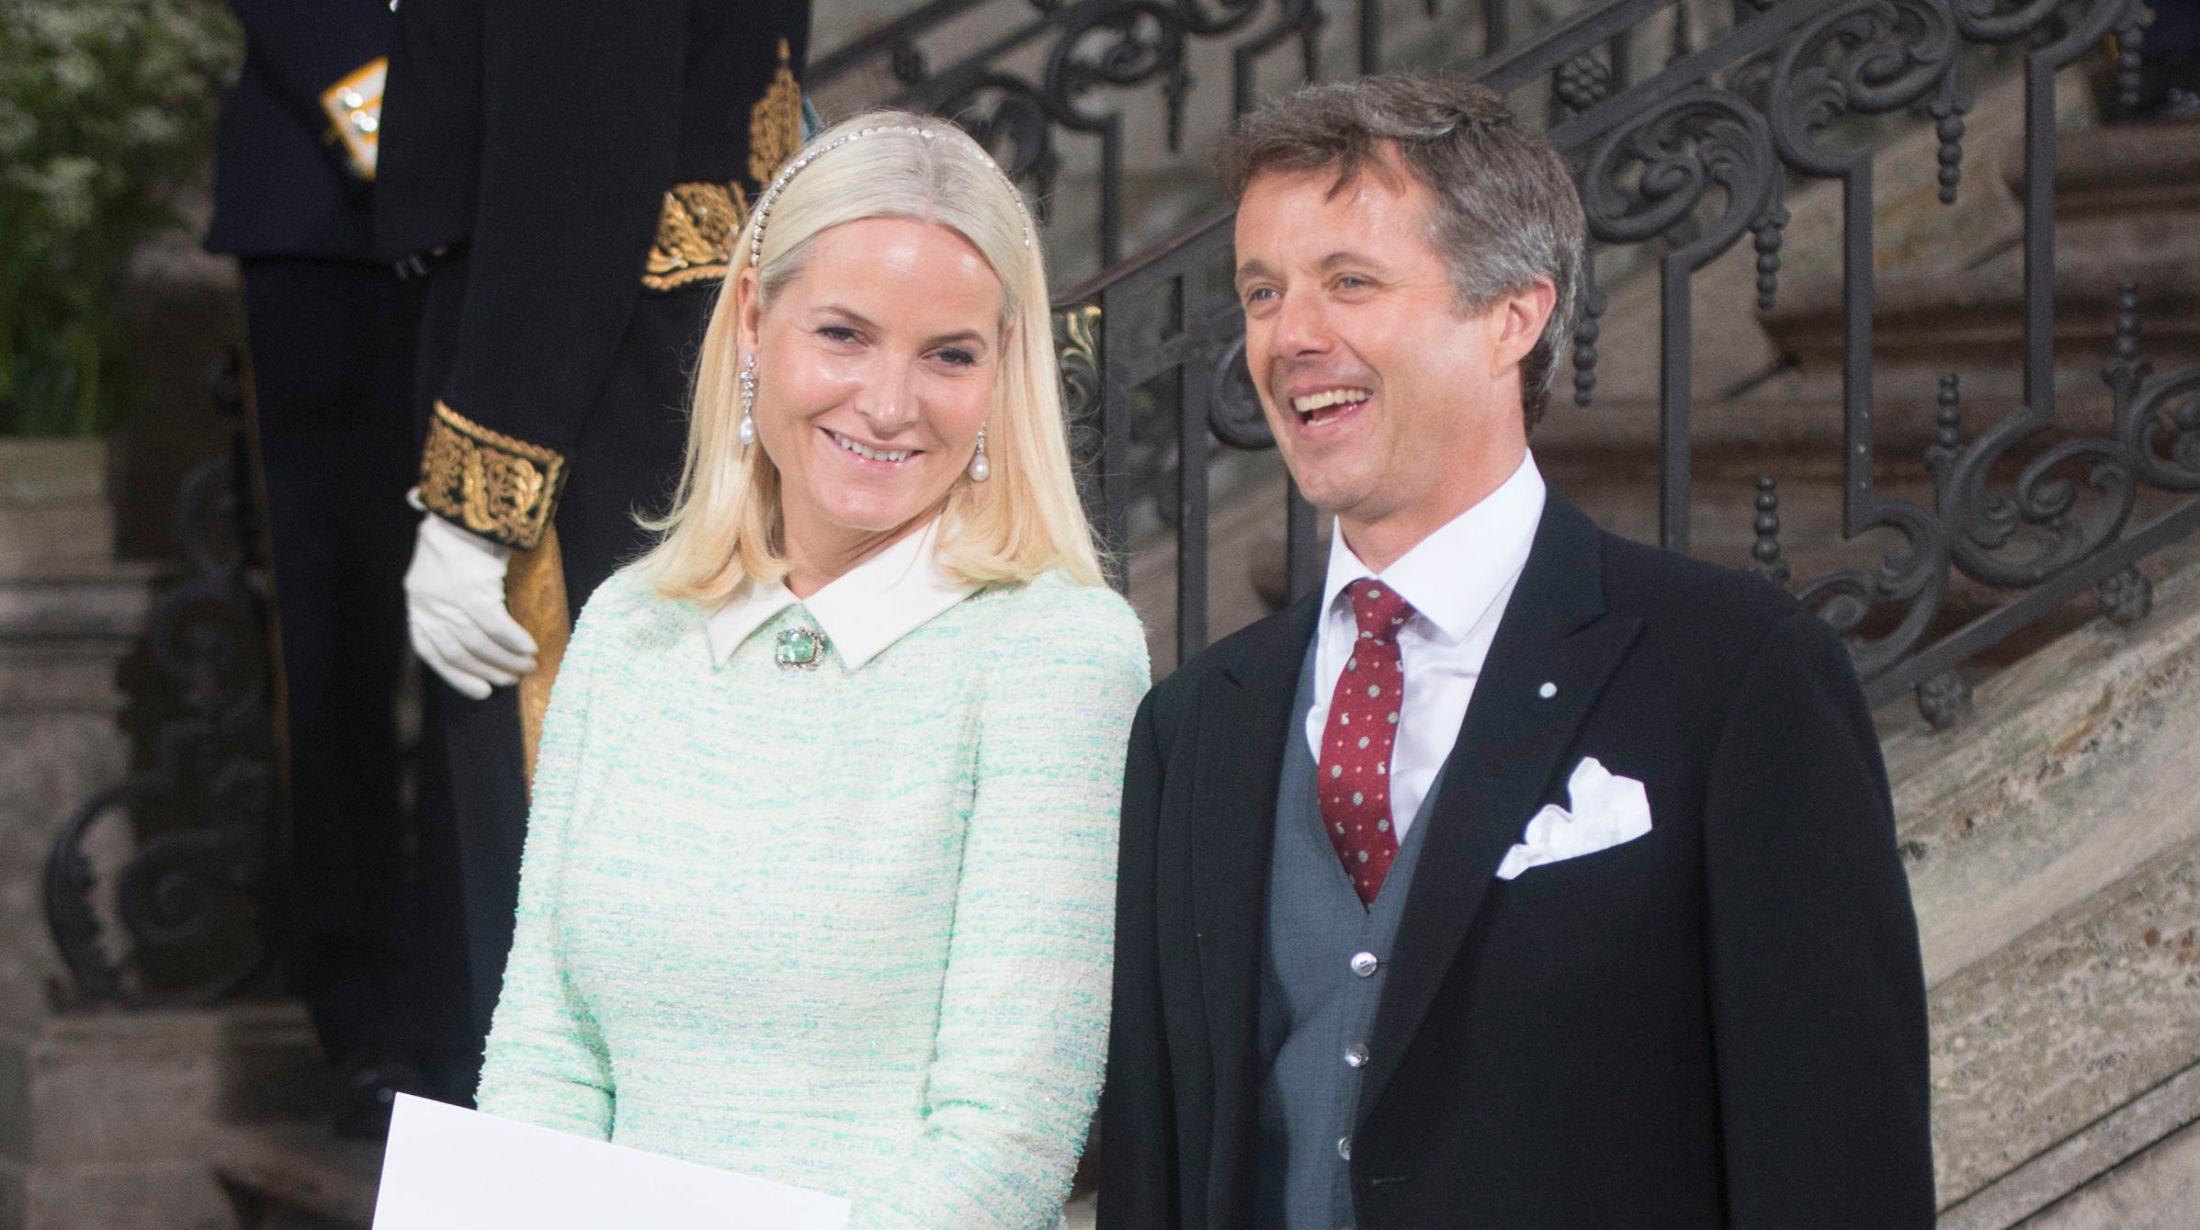 FORTSATT BLOND: Kronprinsesse Mette-Marit holder på den platinablonde fargen, og under prinsedåpen i Stockholm hadde hun en lang bobfrisyre med glitrende hårbøyle. Her sammen med kronprins Frederik. Foto: NTB scanpix